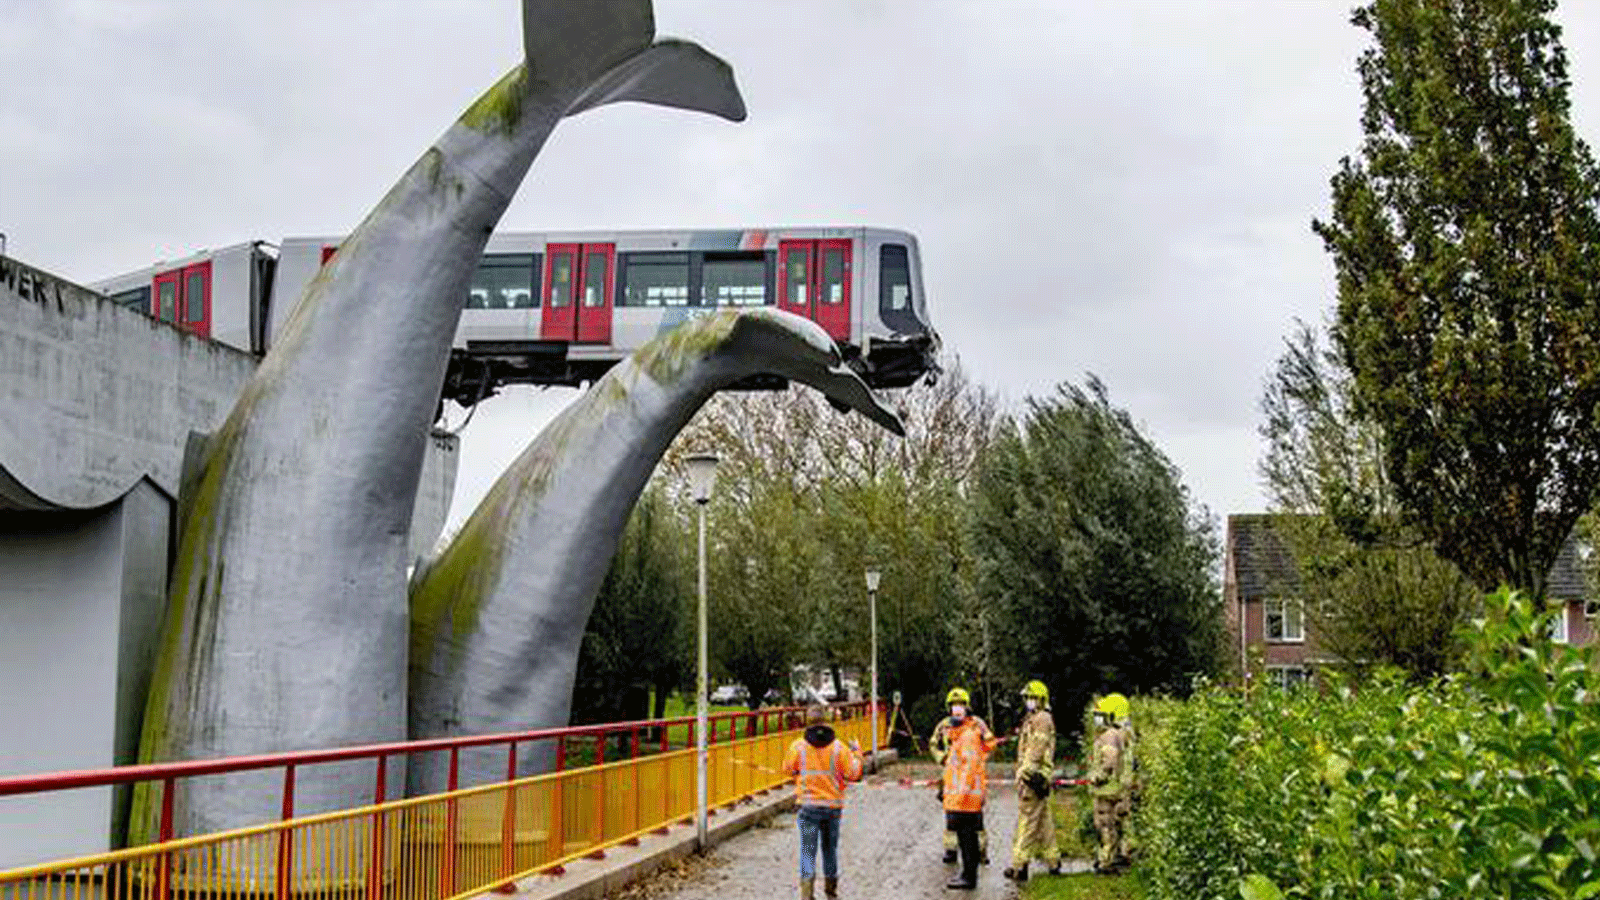 القطار الذي خرج عن مساره واستقر عل مجسم ذيل الحوت في هولندا